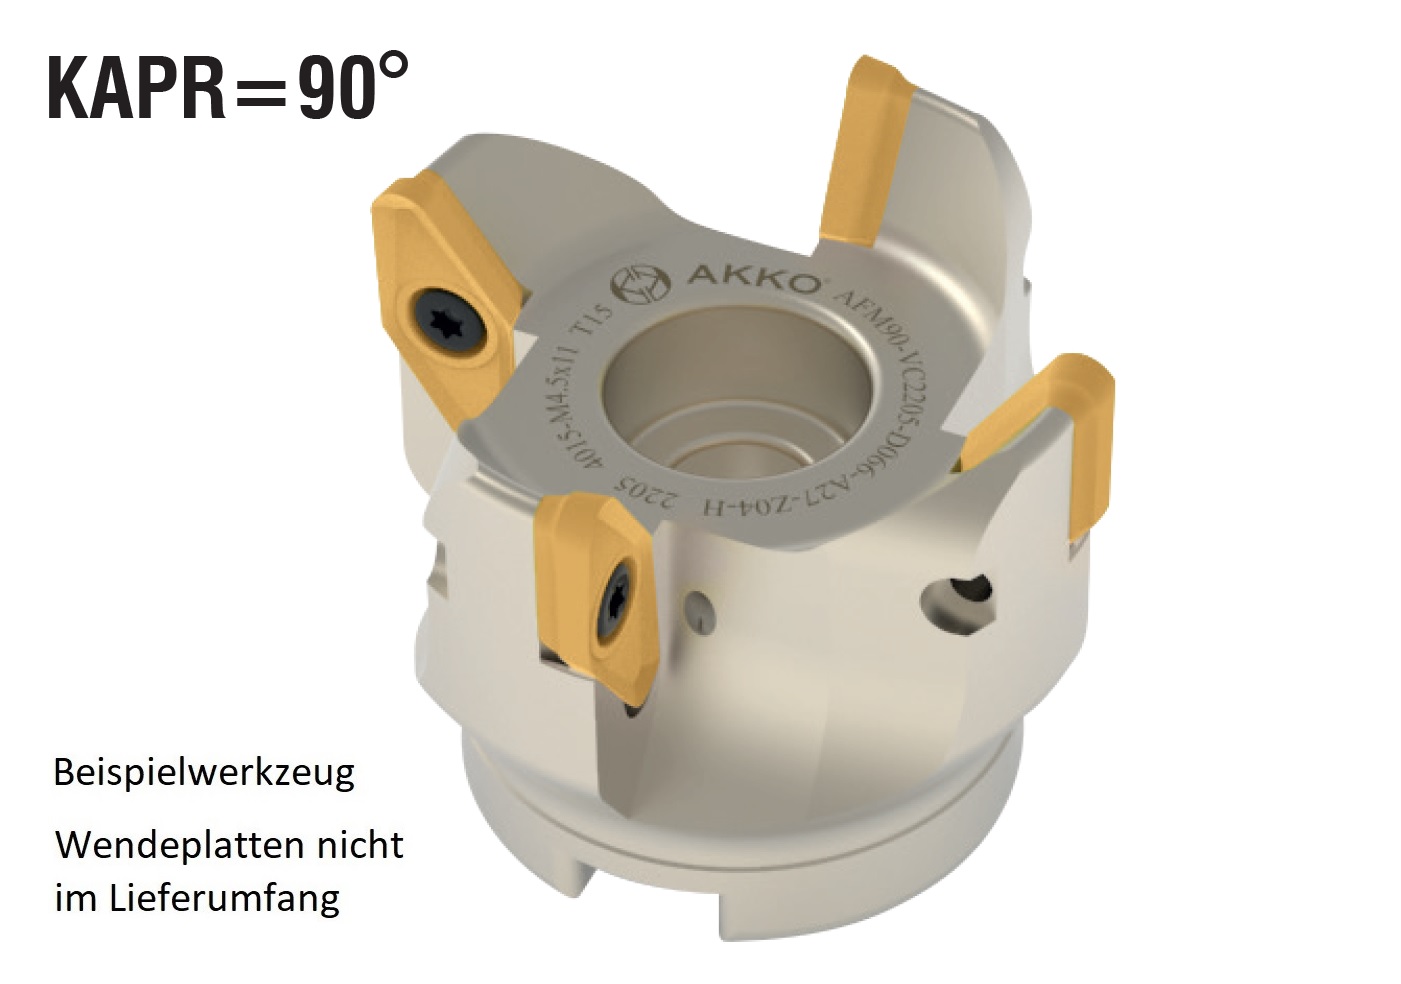 AKKO-Eckmesserkopf ø 80 mm, 90° Anstellwinkel, kompatibel mit ISO VCKT 2205..
Aufnahmebohrung ø 27 mm (Typ A), mit Innenkühlung, Z=5